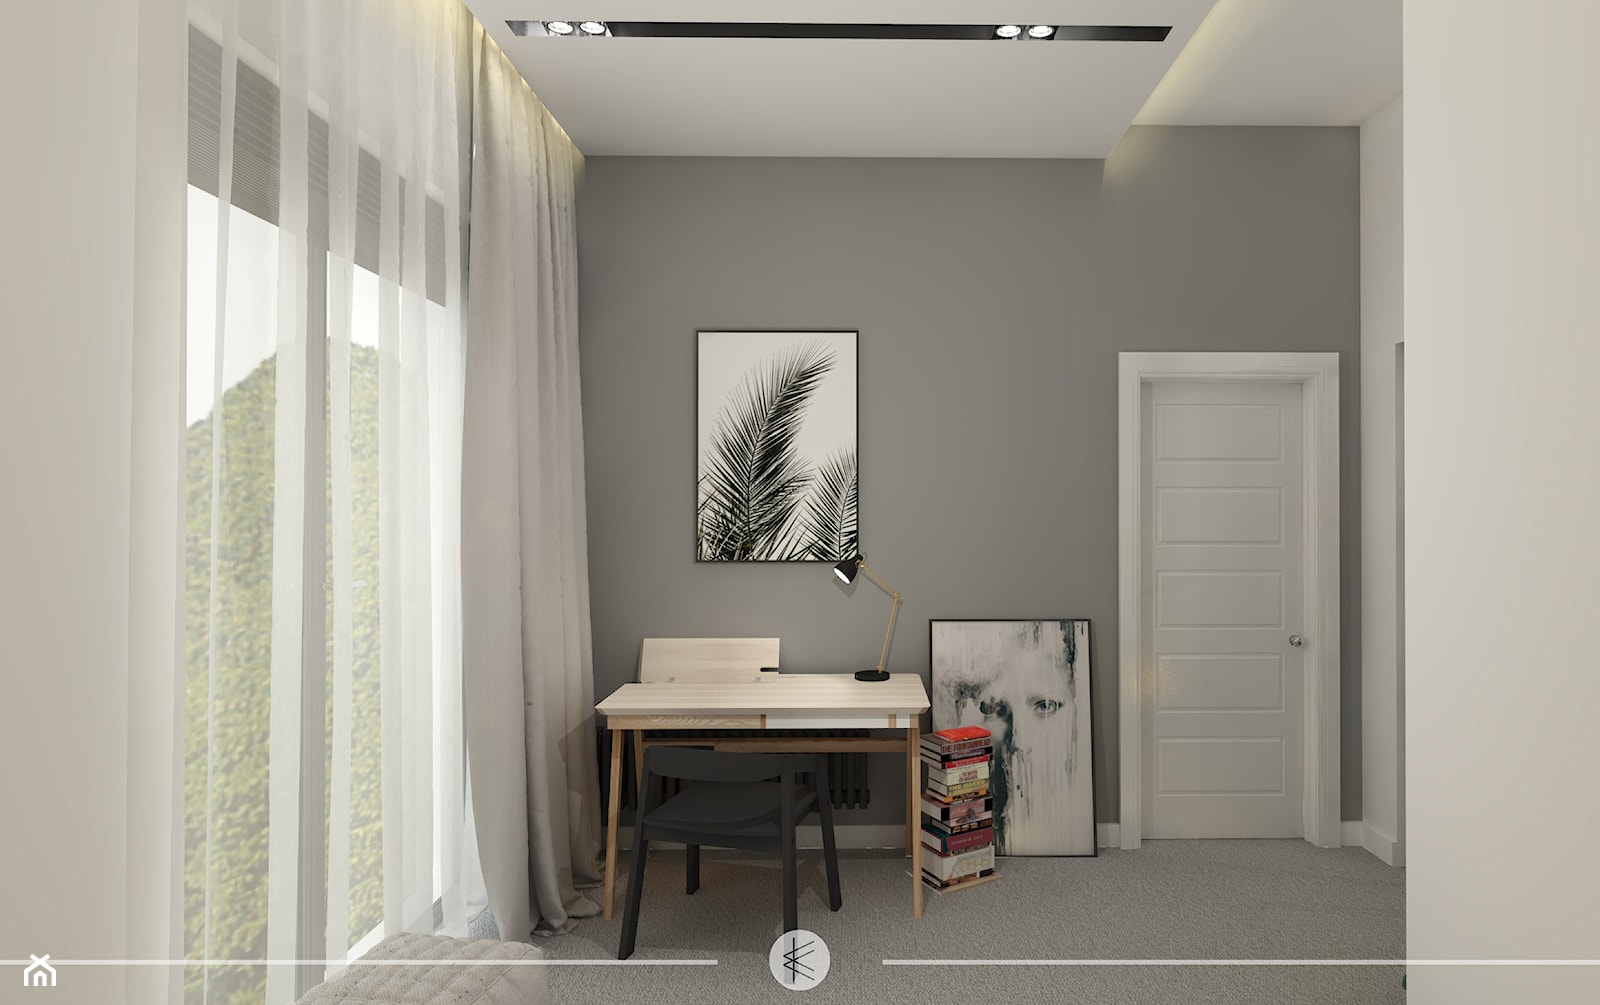 LOFTOWY CHARAKTER. - Sypialnia, styl minimalistyczny - zdjęcie od KWojciechowska Studio - Homebook